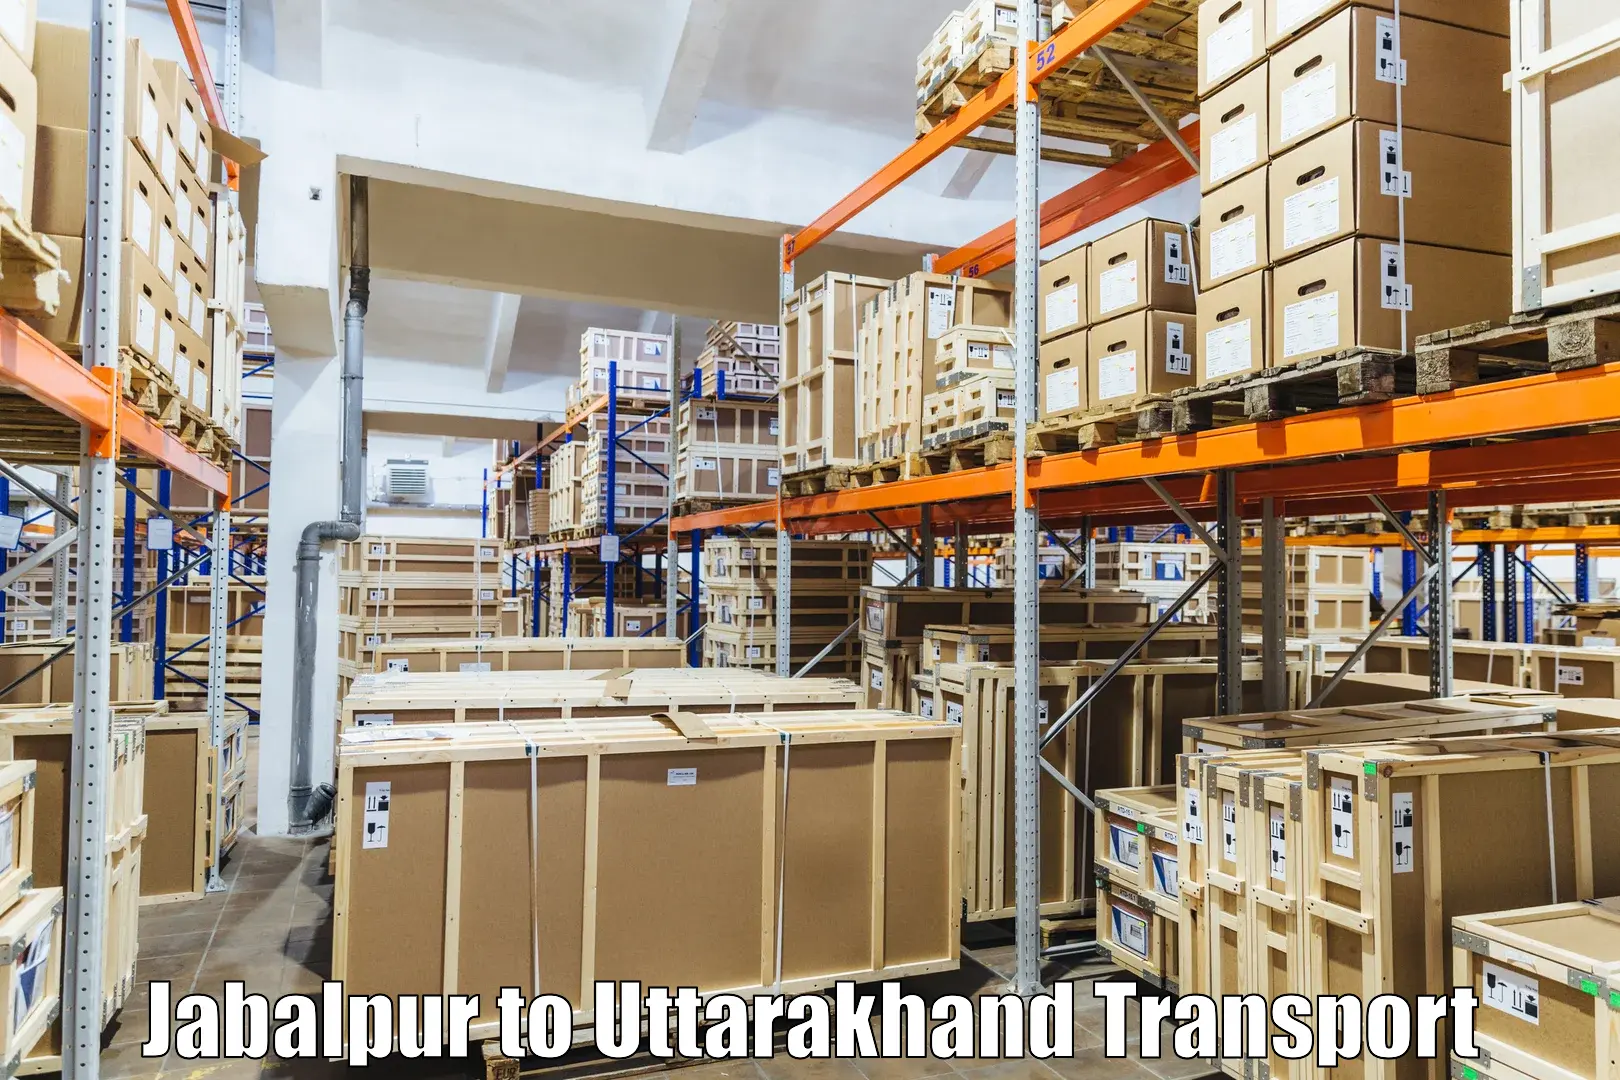 Shipping partner Jabalpur to Dehradun